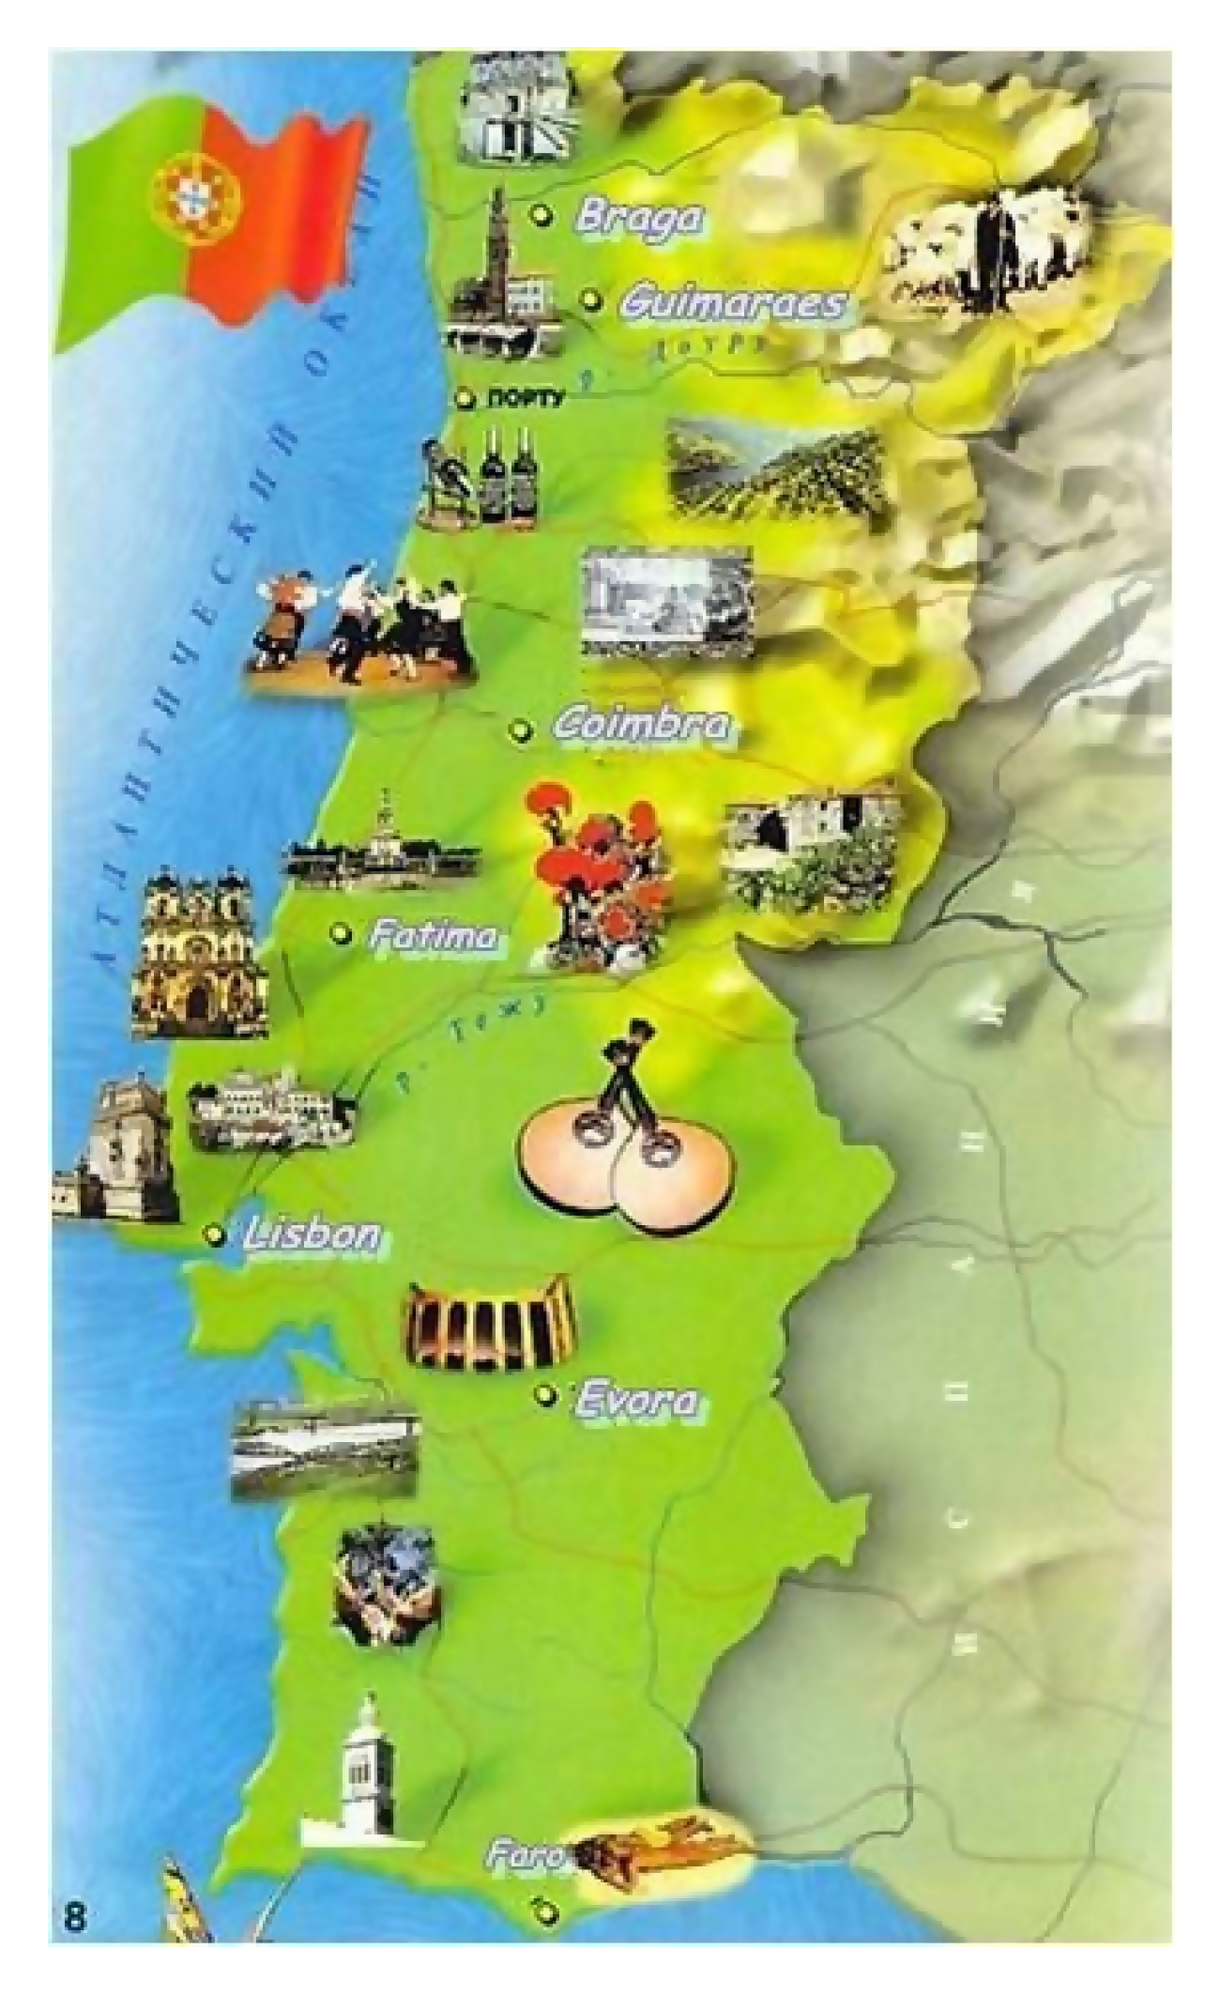 Grande viaje ilustra mapa de Portugal, Portugal, Europa